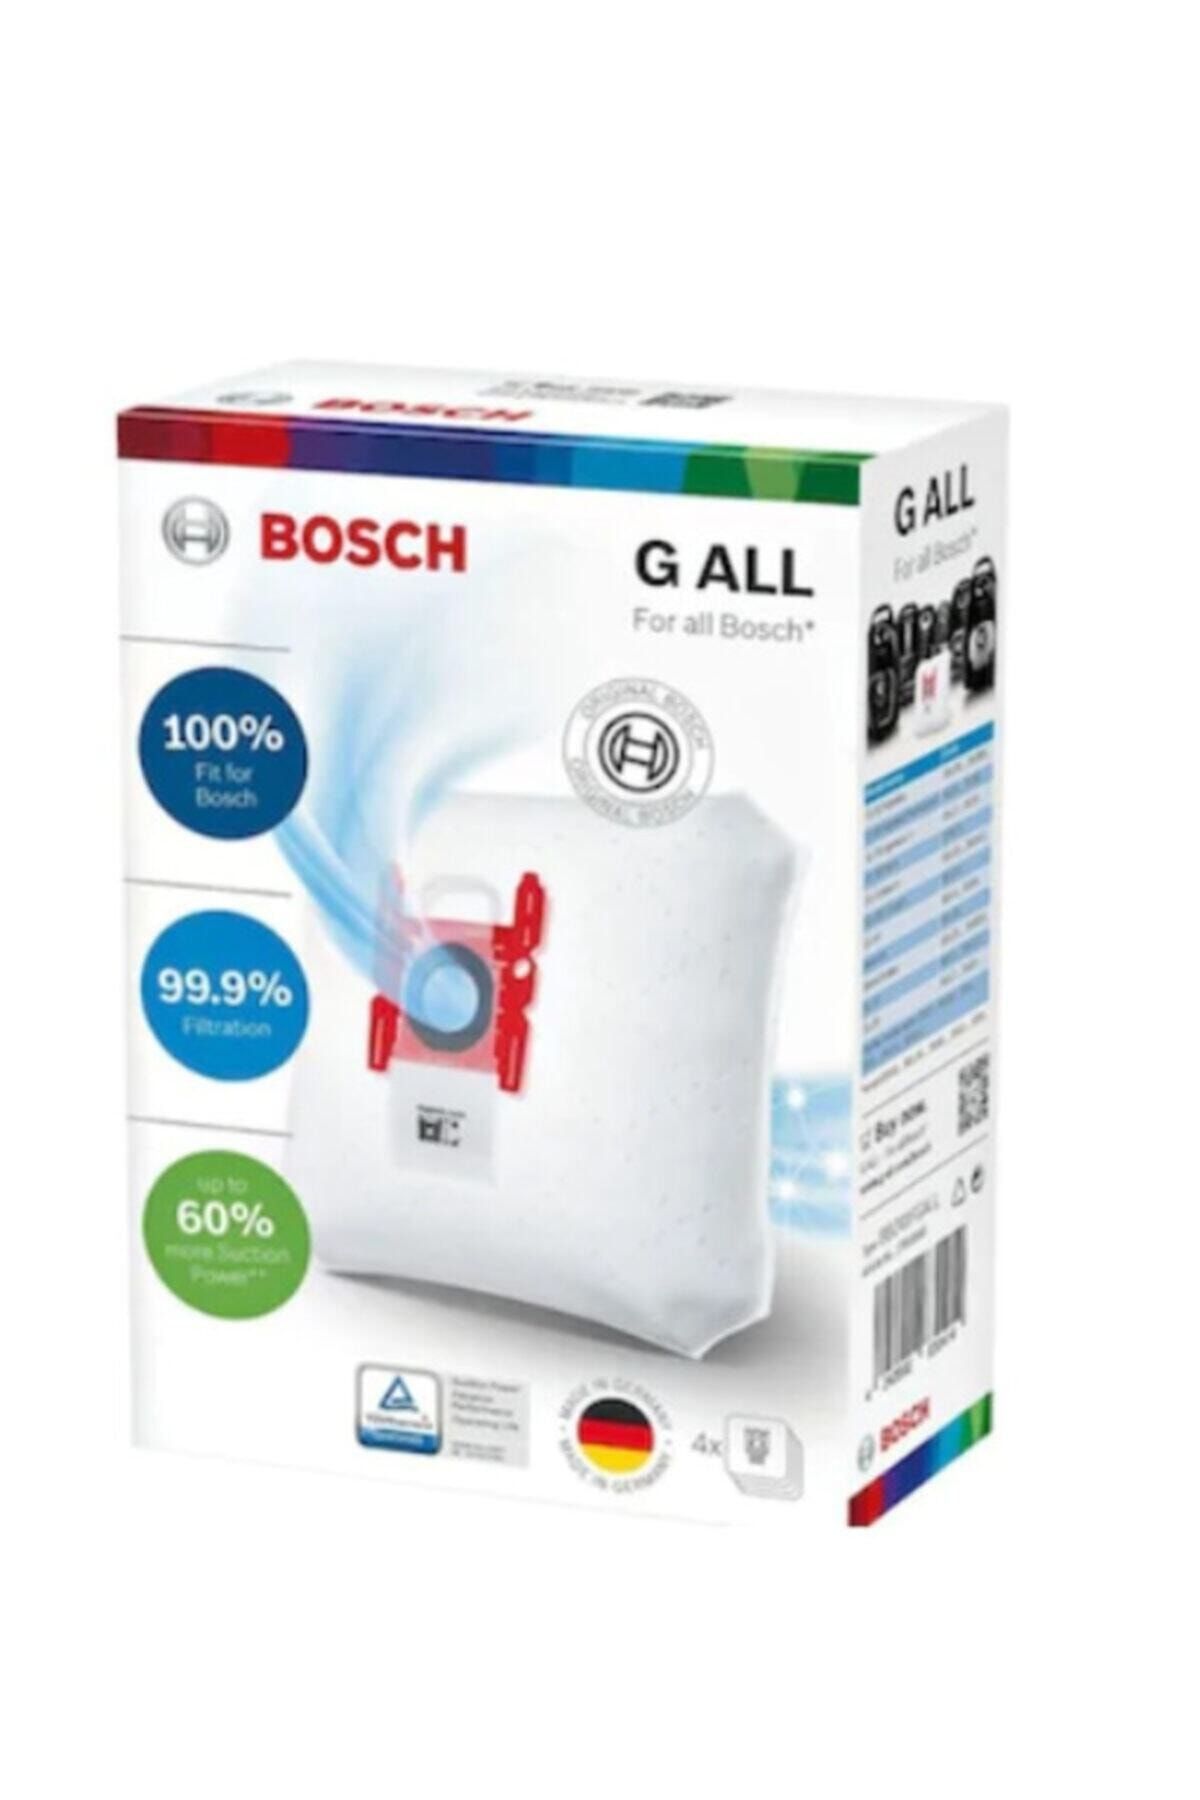 Bosch (Bbz41fgall) Elektrik Süpürgesi Toz Torbası